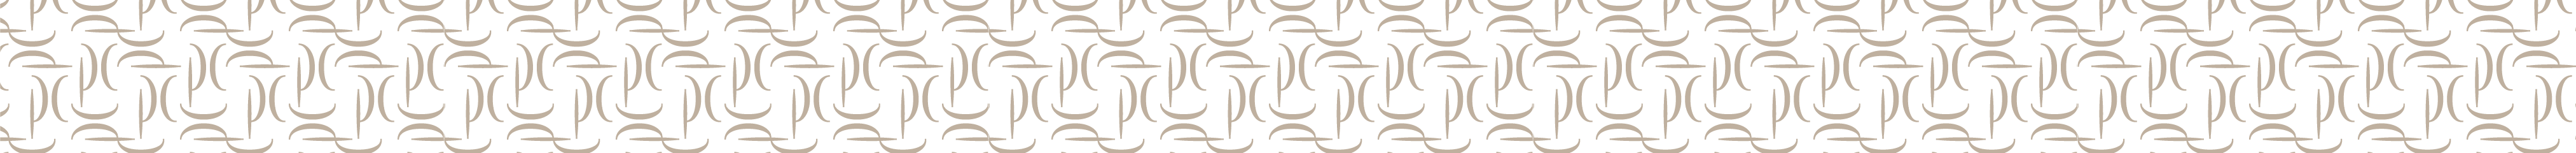 PC Logo Pattern